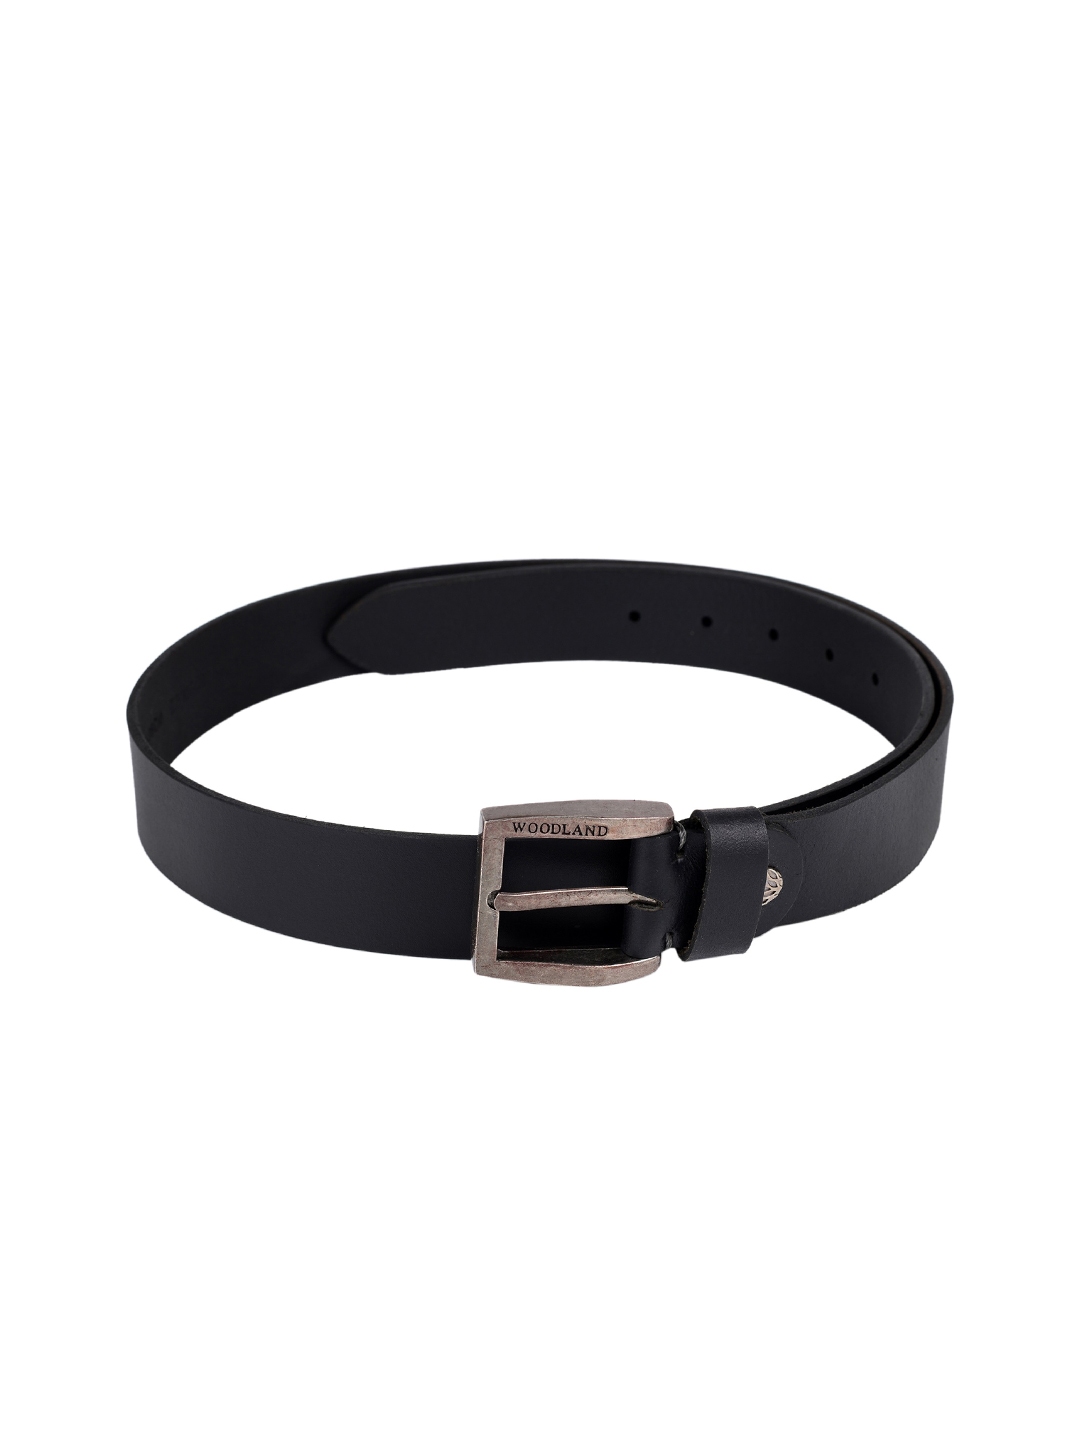 Buy Woodland Men Black Leather Belt - Belts for Men 1618253 | Myntra